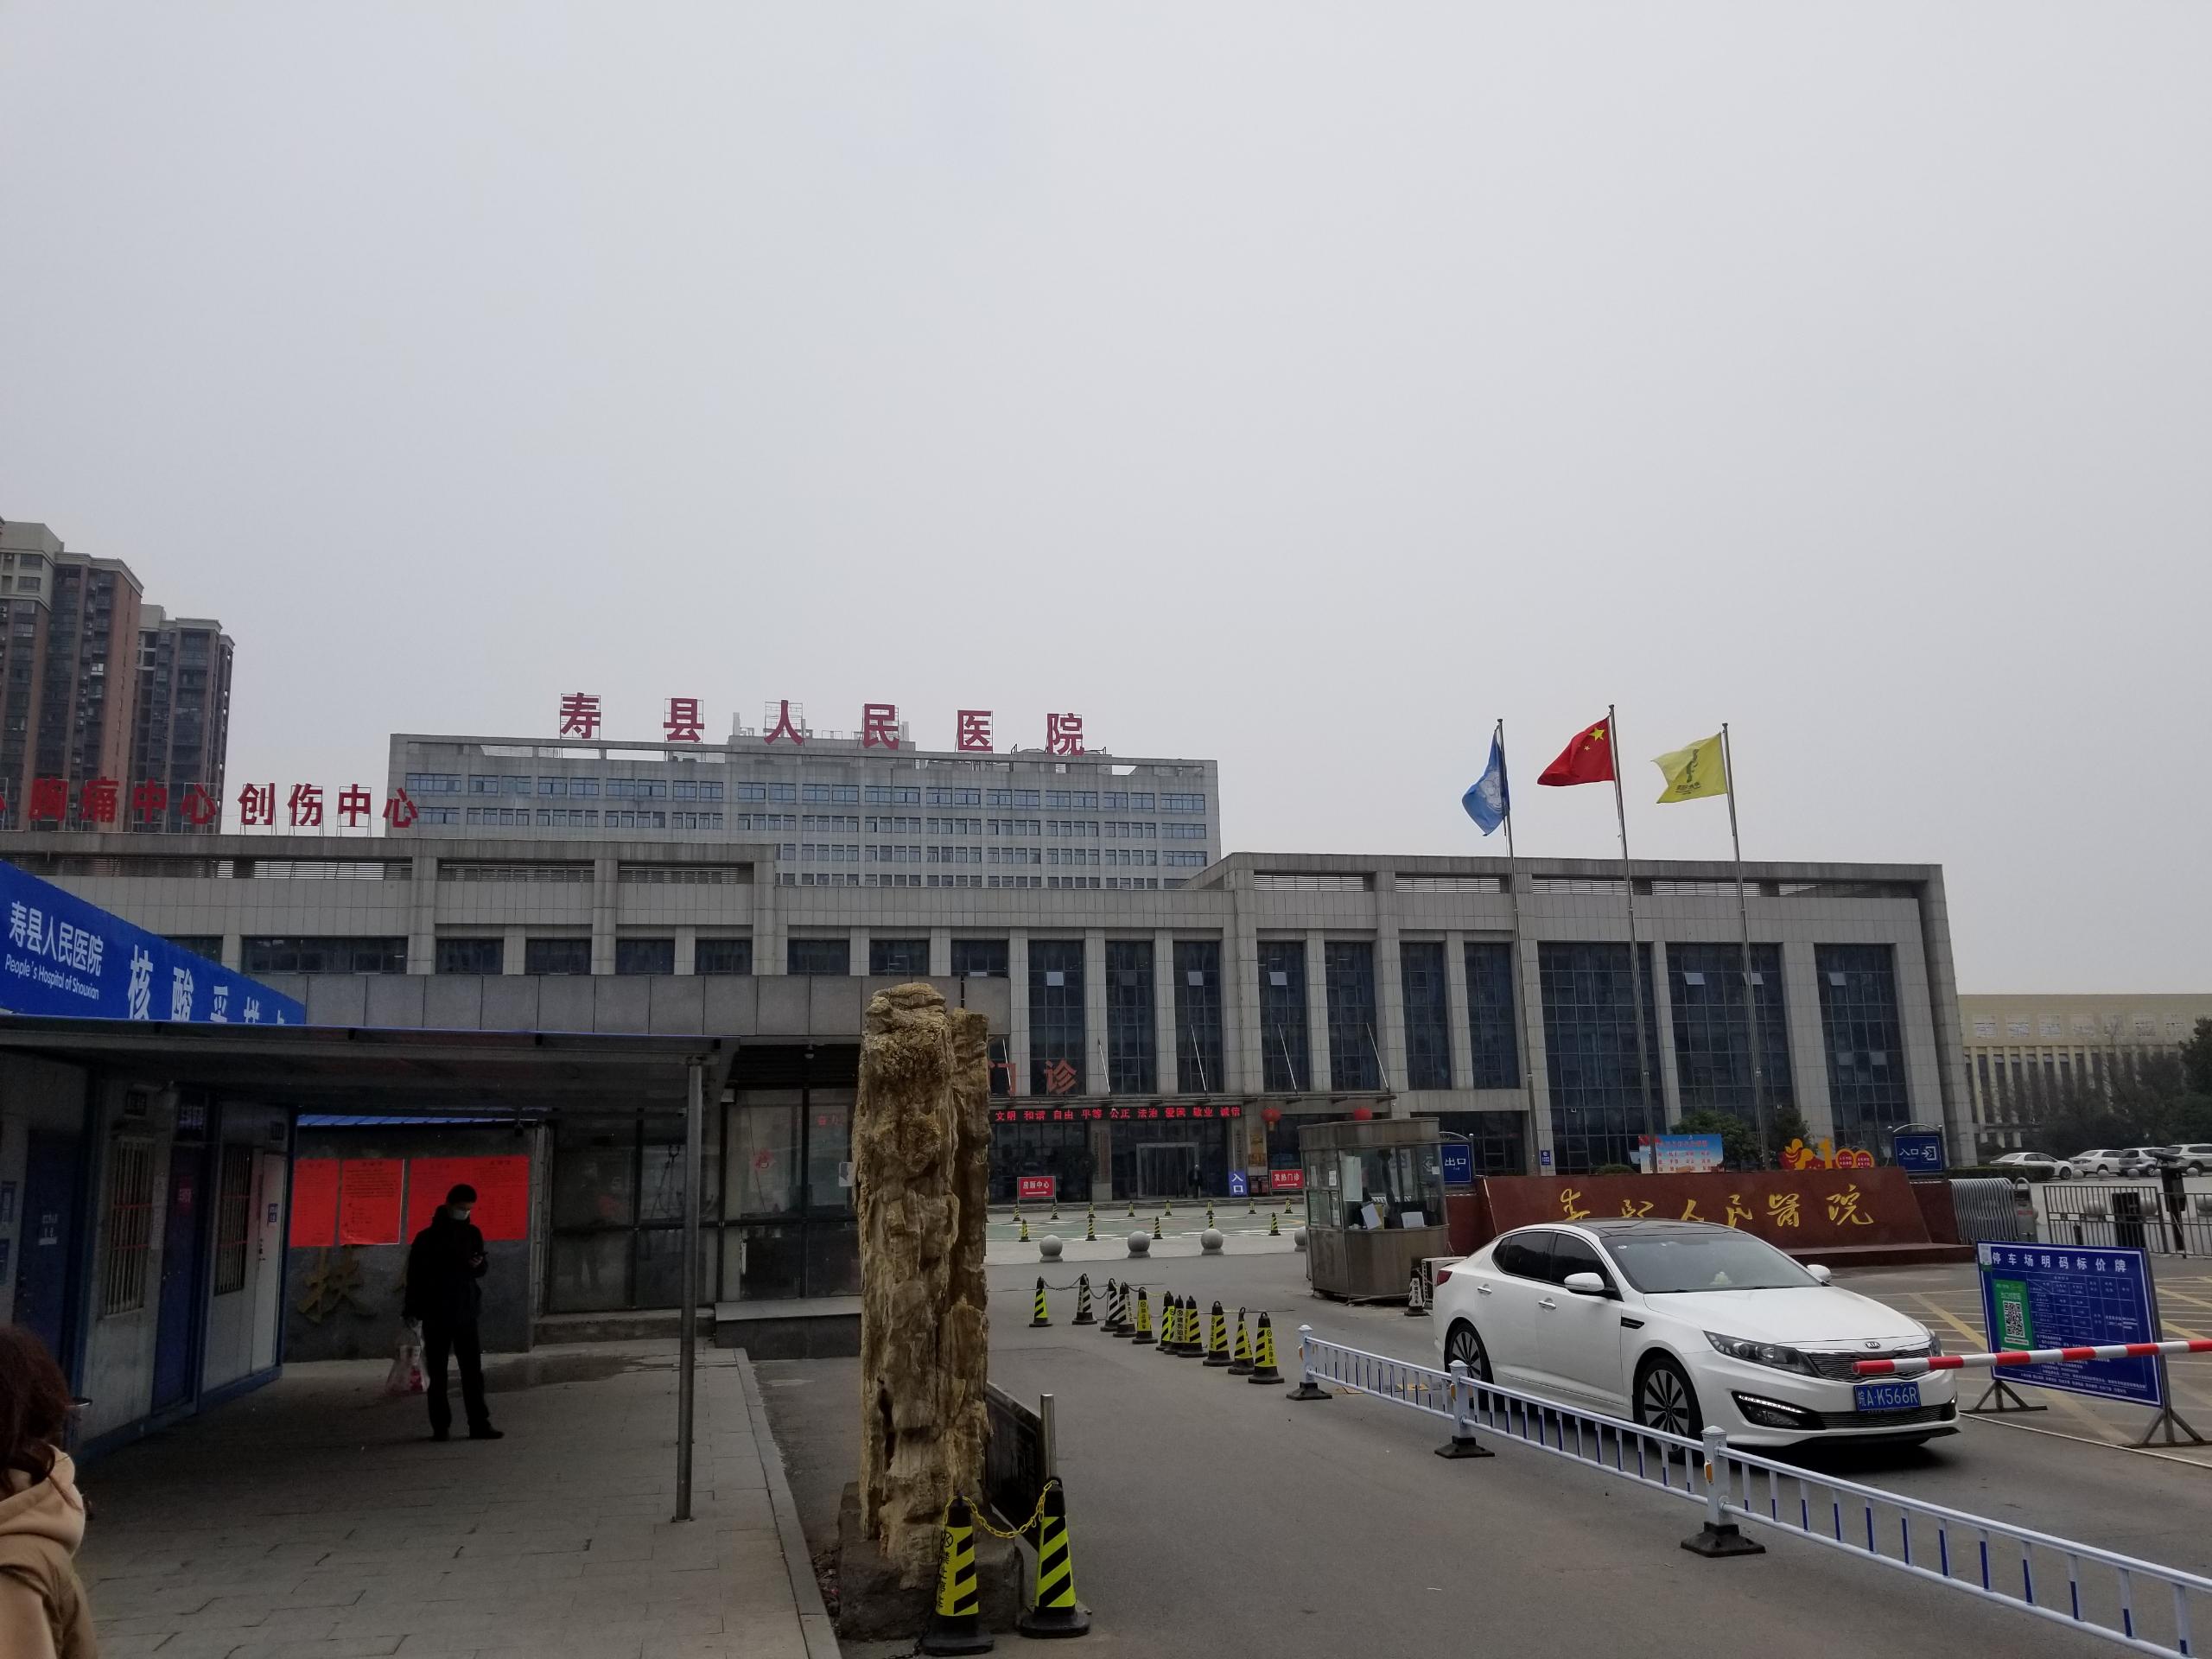 国康儿童综合素质发展测评系统在安徽淮南寿县人民医院完成装机